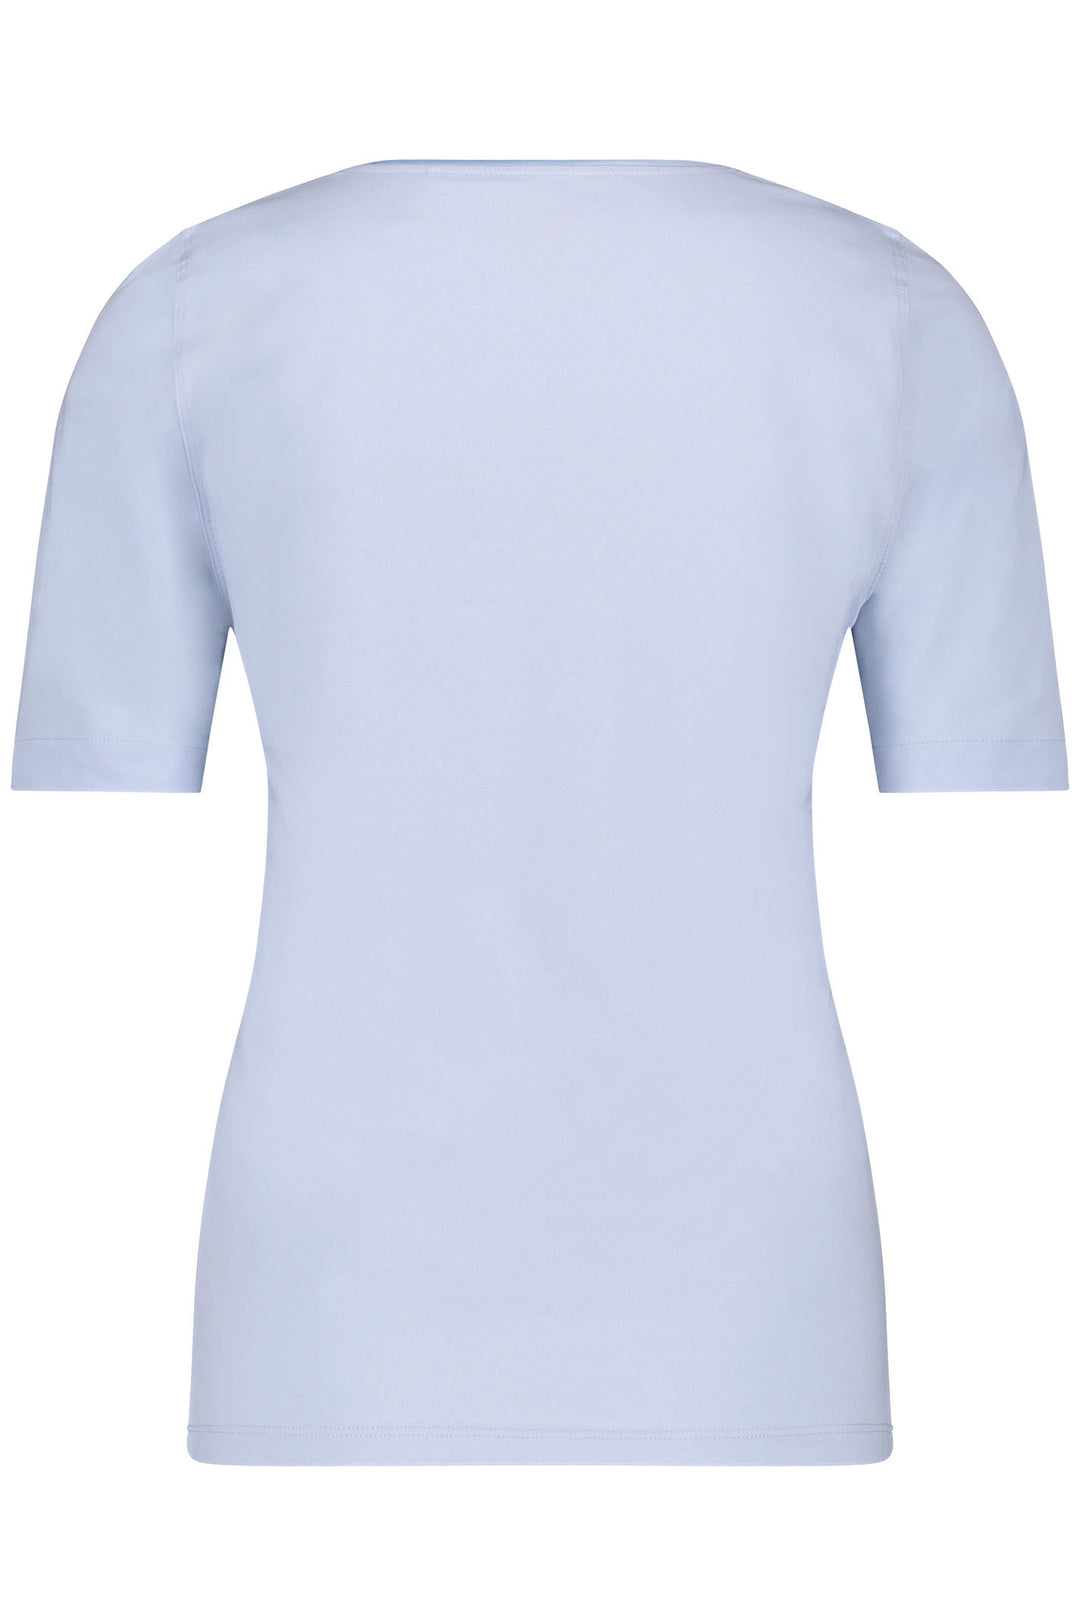 Gerry Weber 977048-44000 Light Blue Round Neck T-Shirt - Dotique Chesterfield